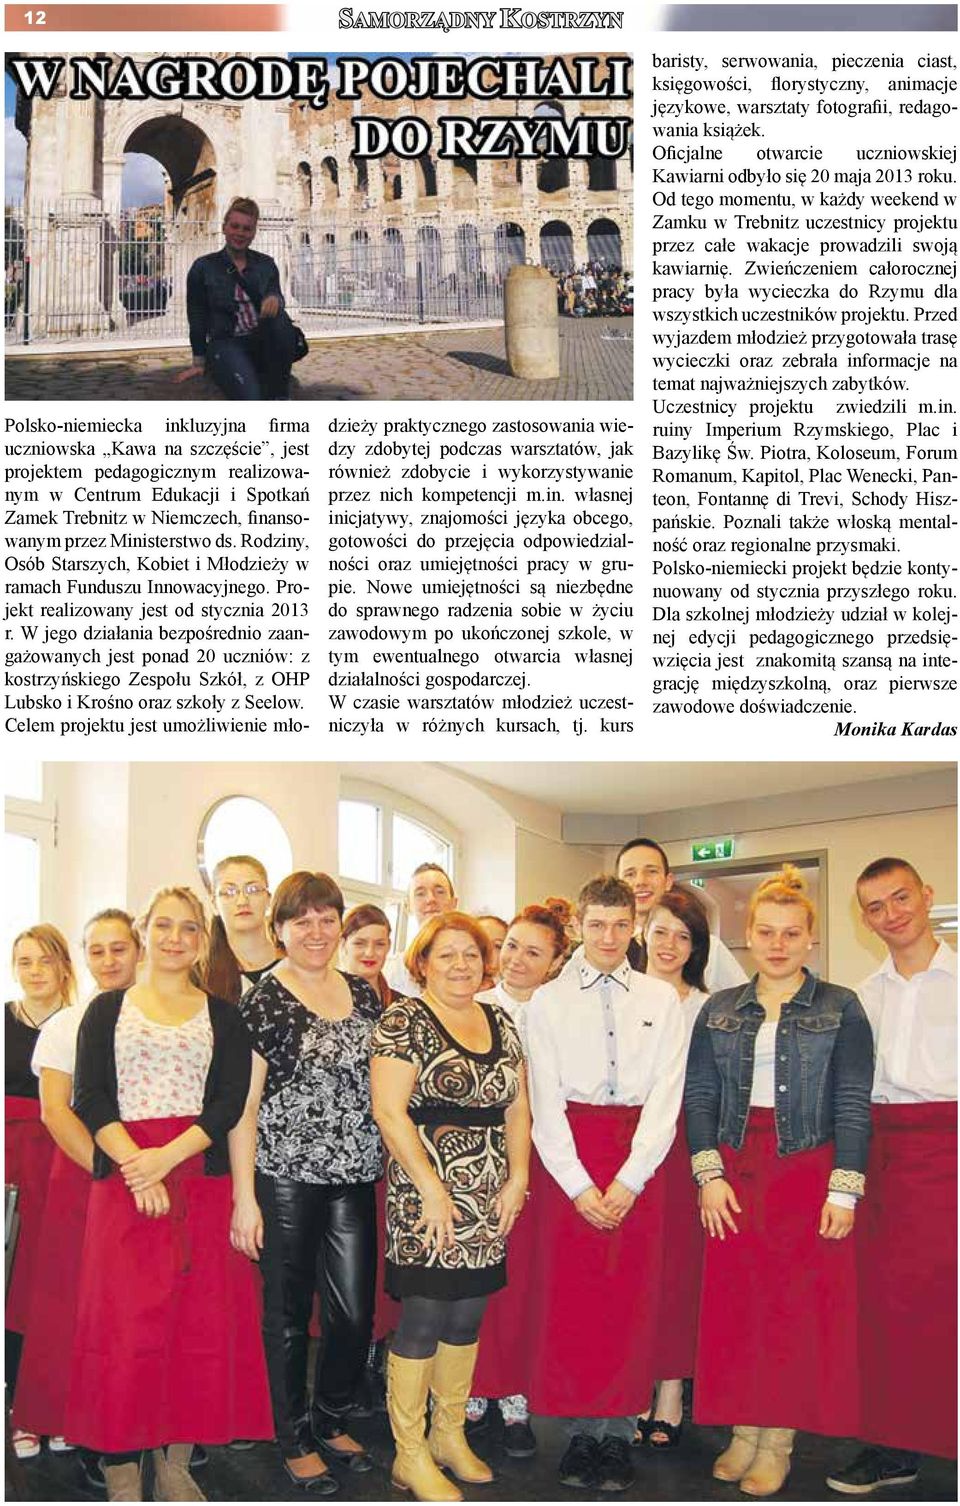 W jego działania bezpośrednio zaangażowanych jest ponad 20 uczniów: z kostrzyńskiego Zespołu Szkół, z OHP Lubsko i Krośno oraz szkoły z Seelow.